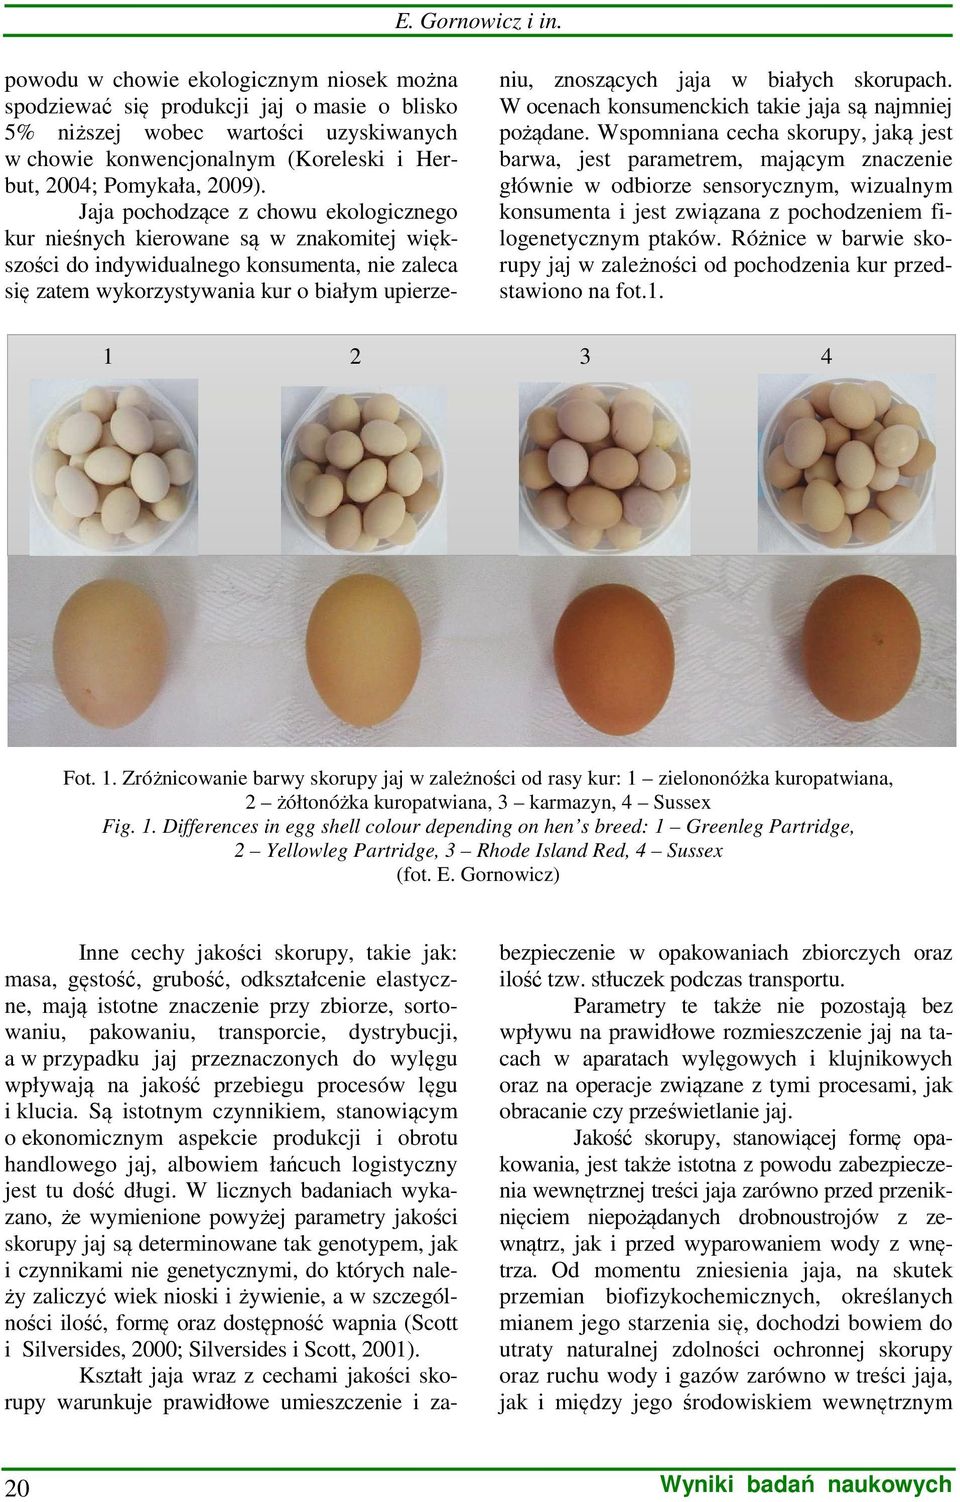 Jaja pochodzące z chowu ekologicznego kur nieśnych kierowane są w znakomitej większości do indywidualnego konsumenta, nie zaleca się zatem wykorzystywania kur o białym upierze1 2 niu, znoszących jaja